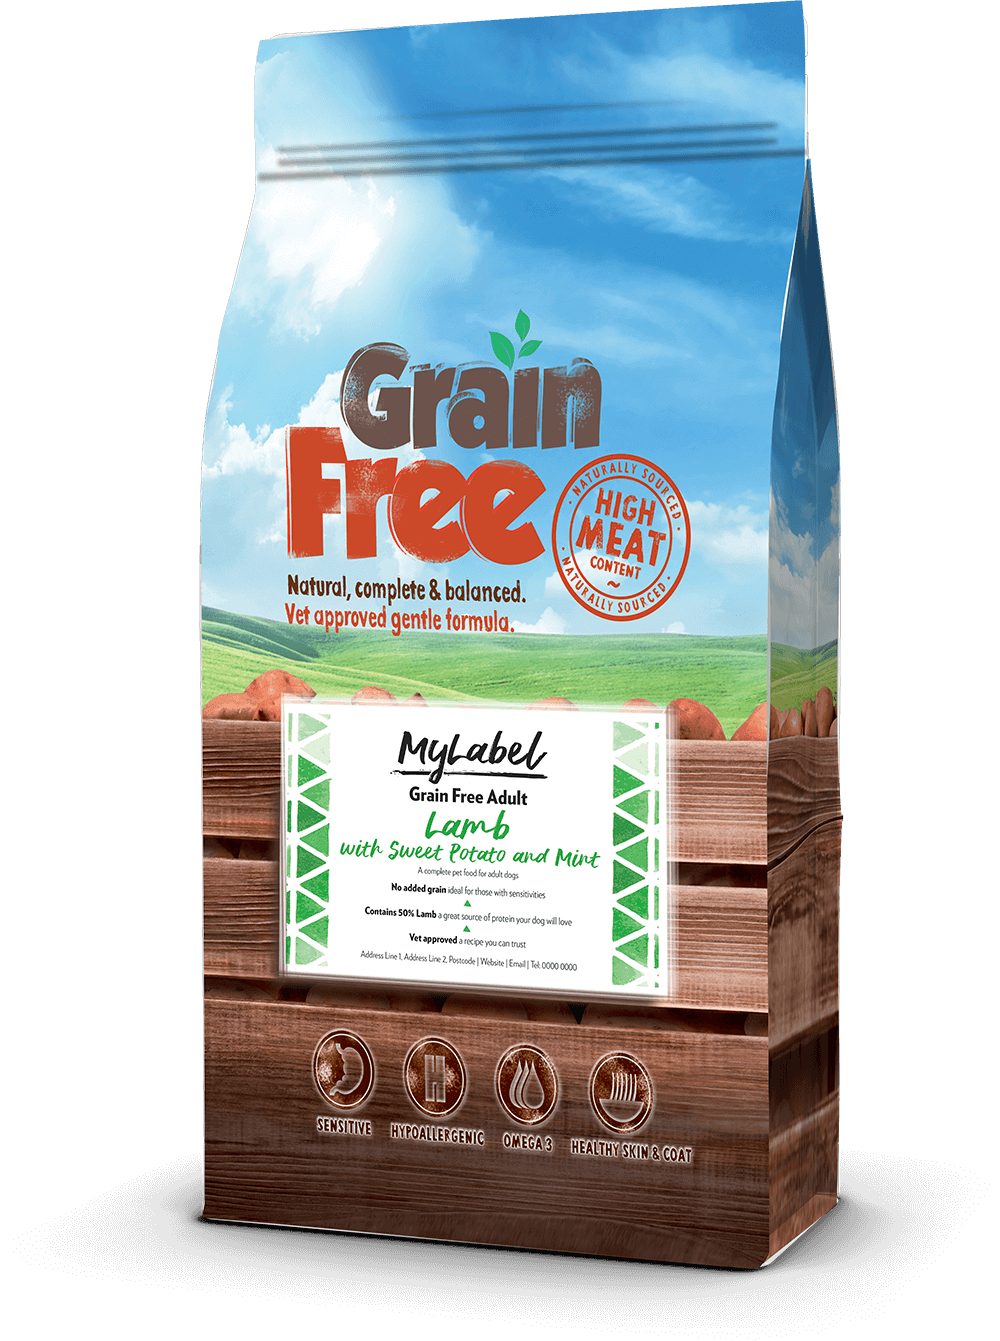 A linha de alimentos para animais de estimação Grain Free inclui uma seleção das melhores fontes de proteína animal recém-preparadas, nutritivas e altamente digeríveis, perfeitamente adaptadas para cães e gatos.